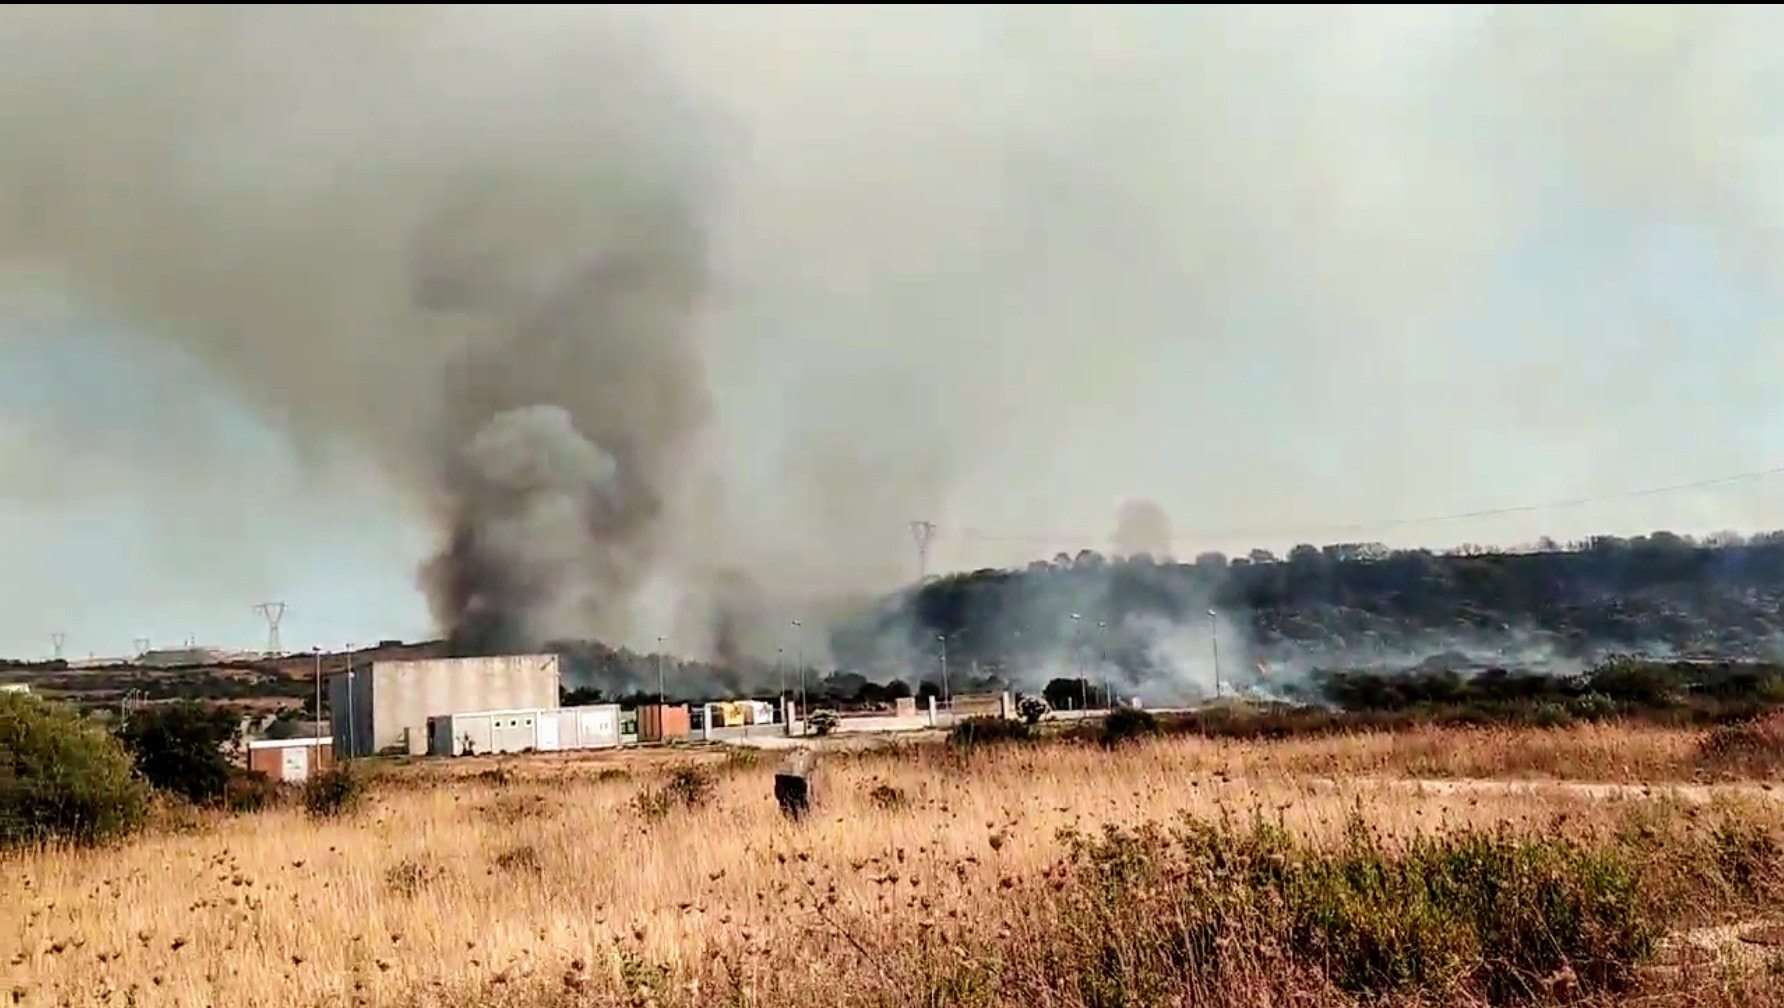 Sardegna in fiamme: centinaia di ettari in fumo